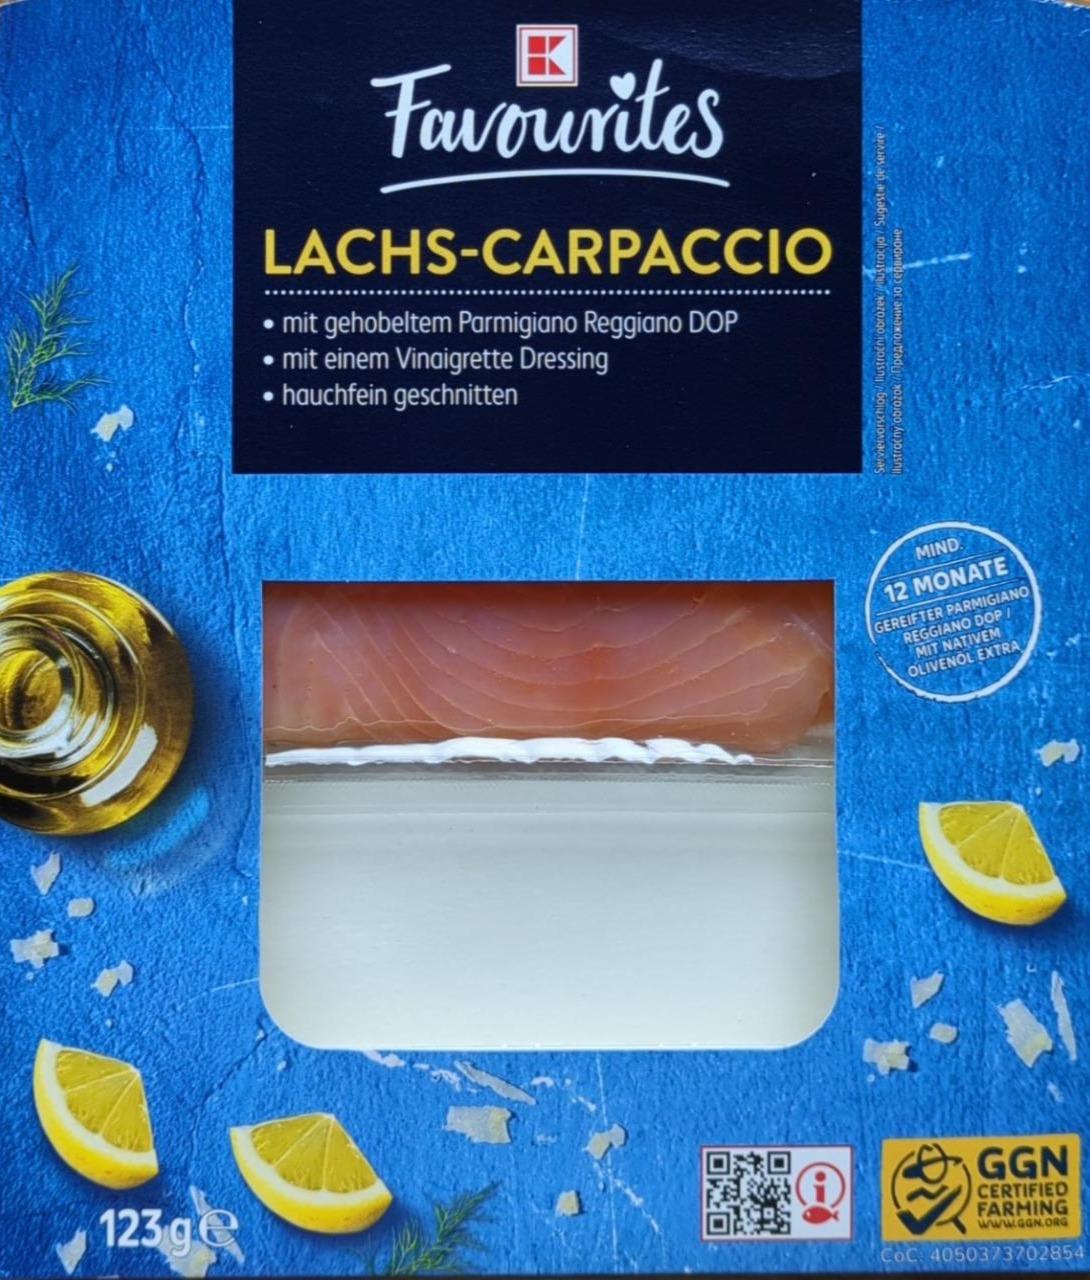 Фото - Карпаччо з лосося Lachs-Capraccio K-Favourites